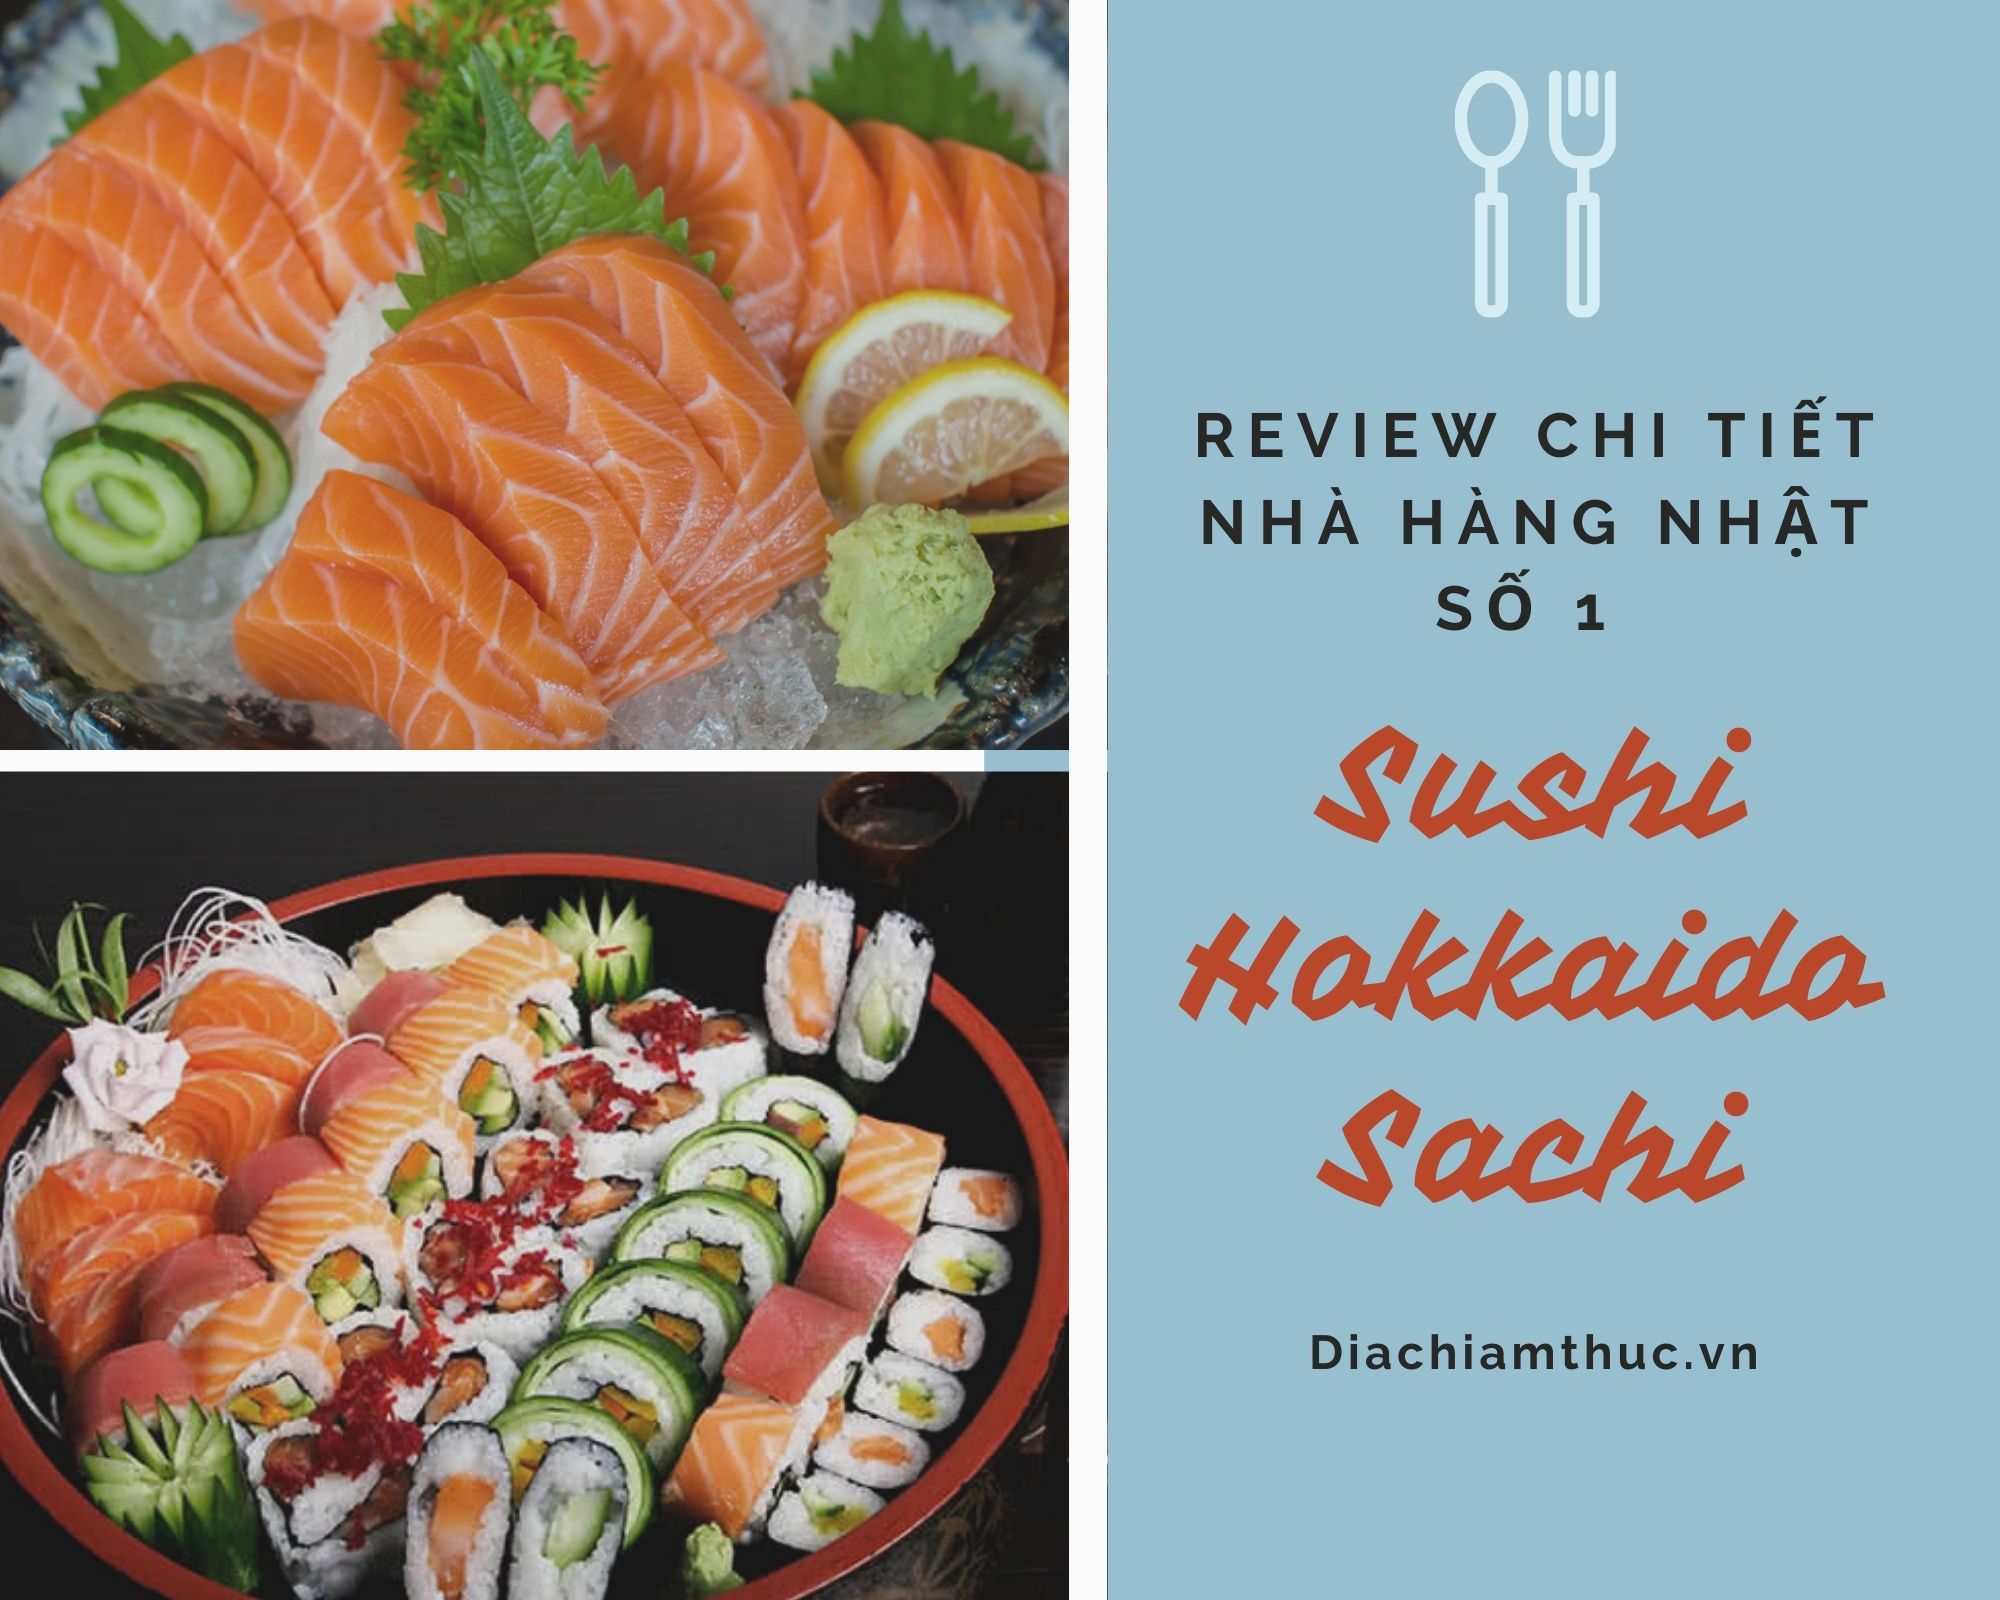 Review nhà hàng nhật Hokkaido Sushi Sachi: Menu, các chi nhánh, giá